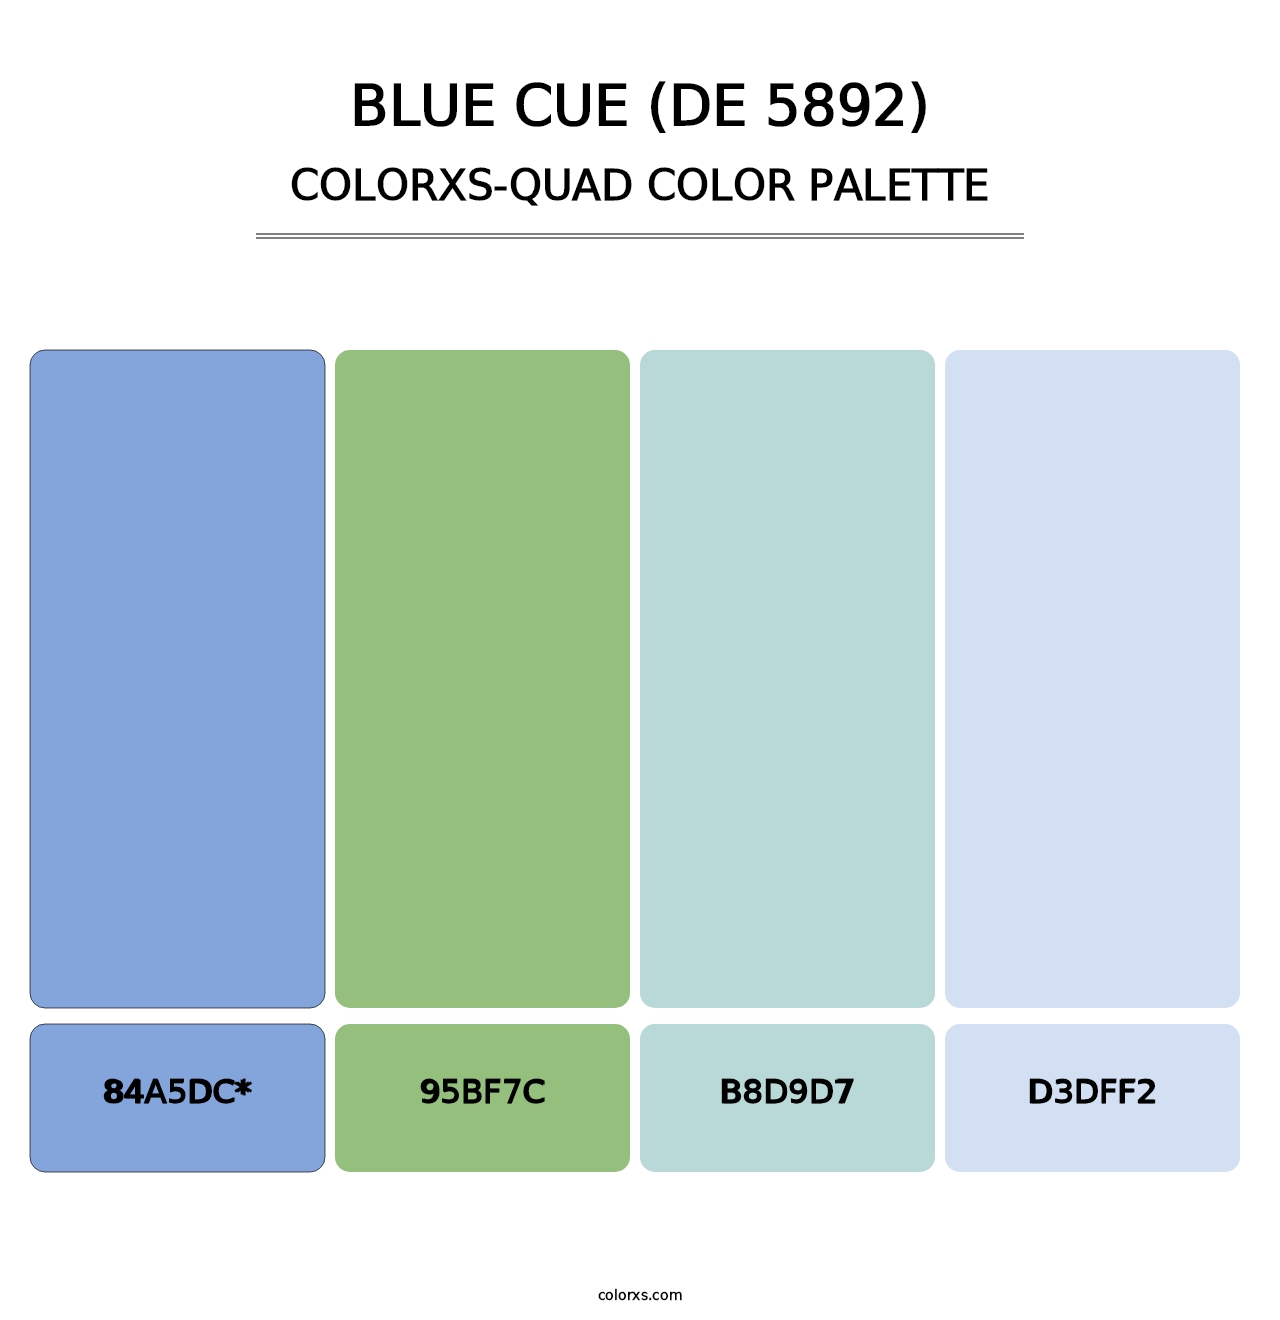 Blue Cue (DE 5892) - Colorxs Quad Palette